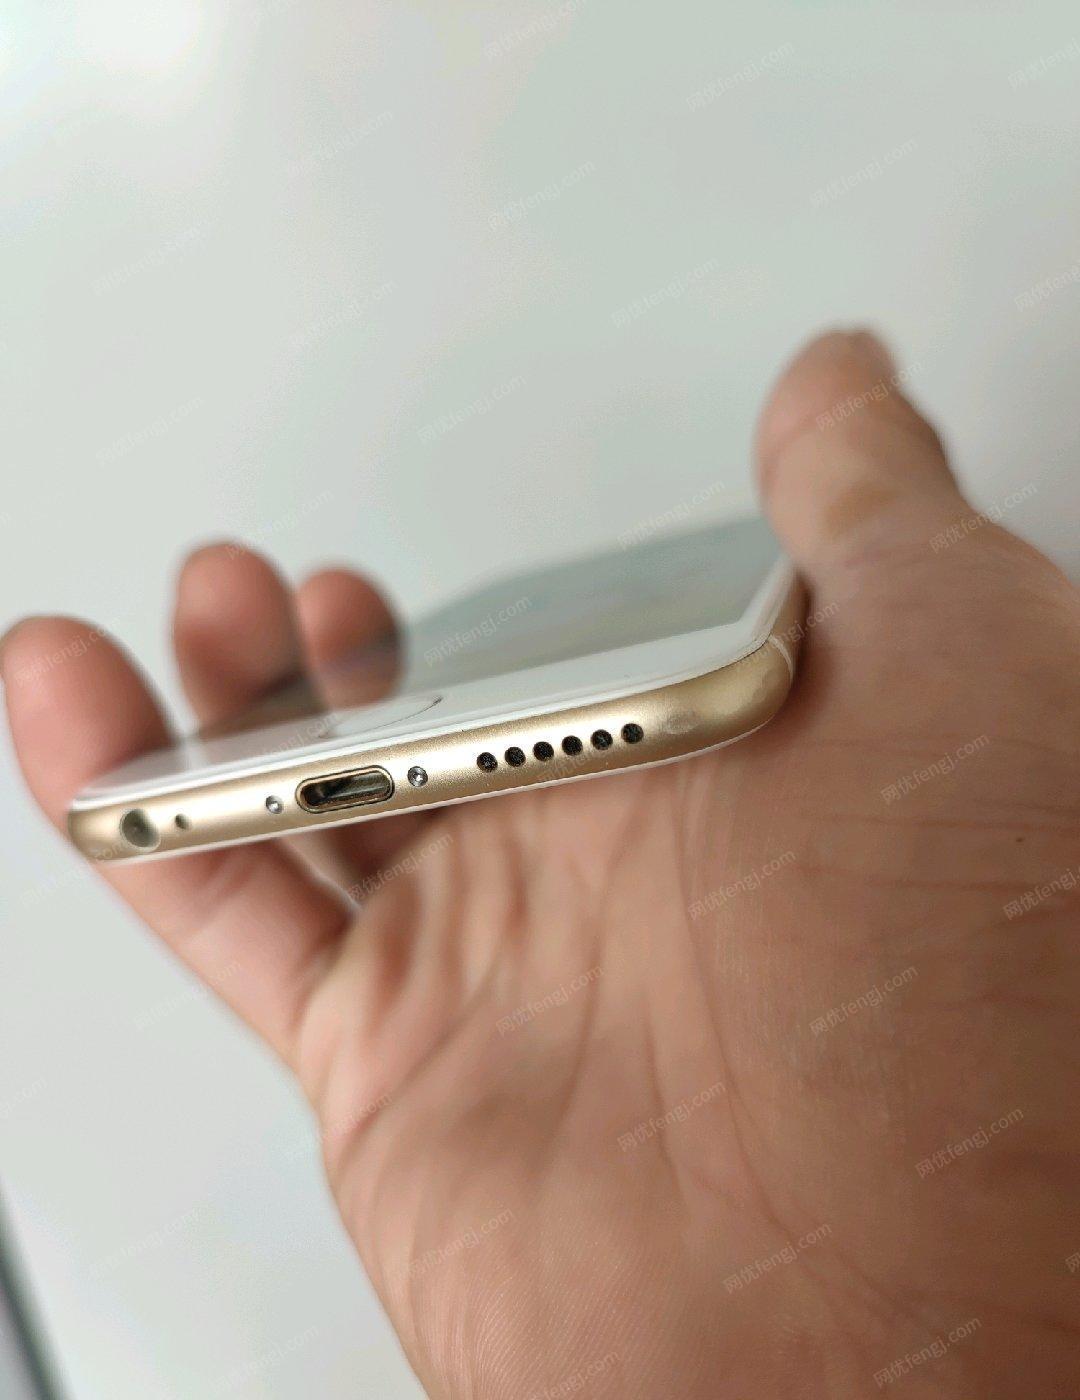 河北沧州64g苹果手机出售